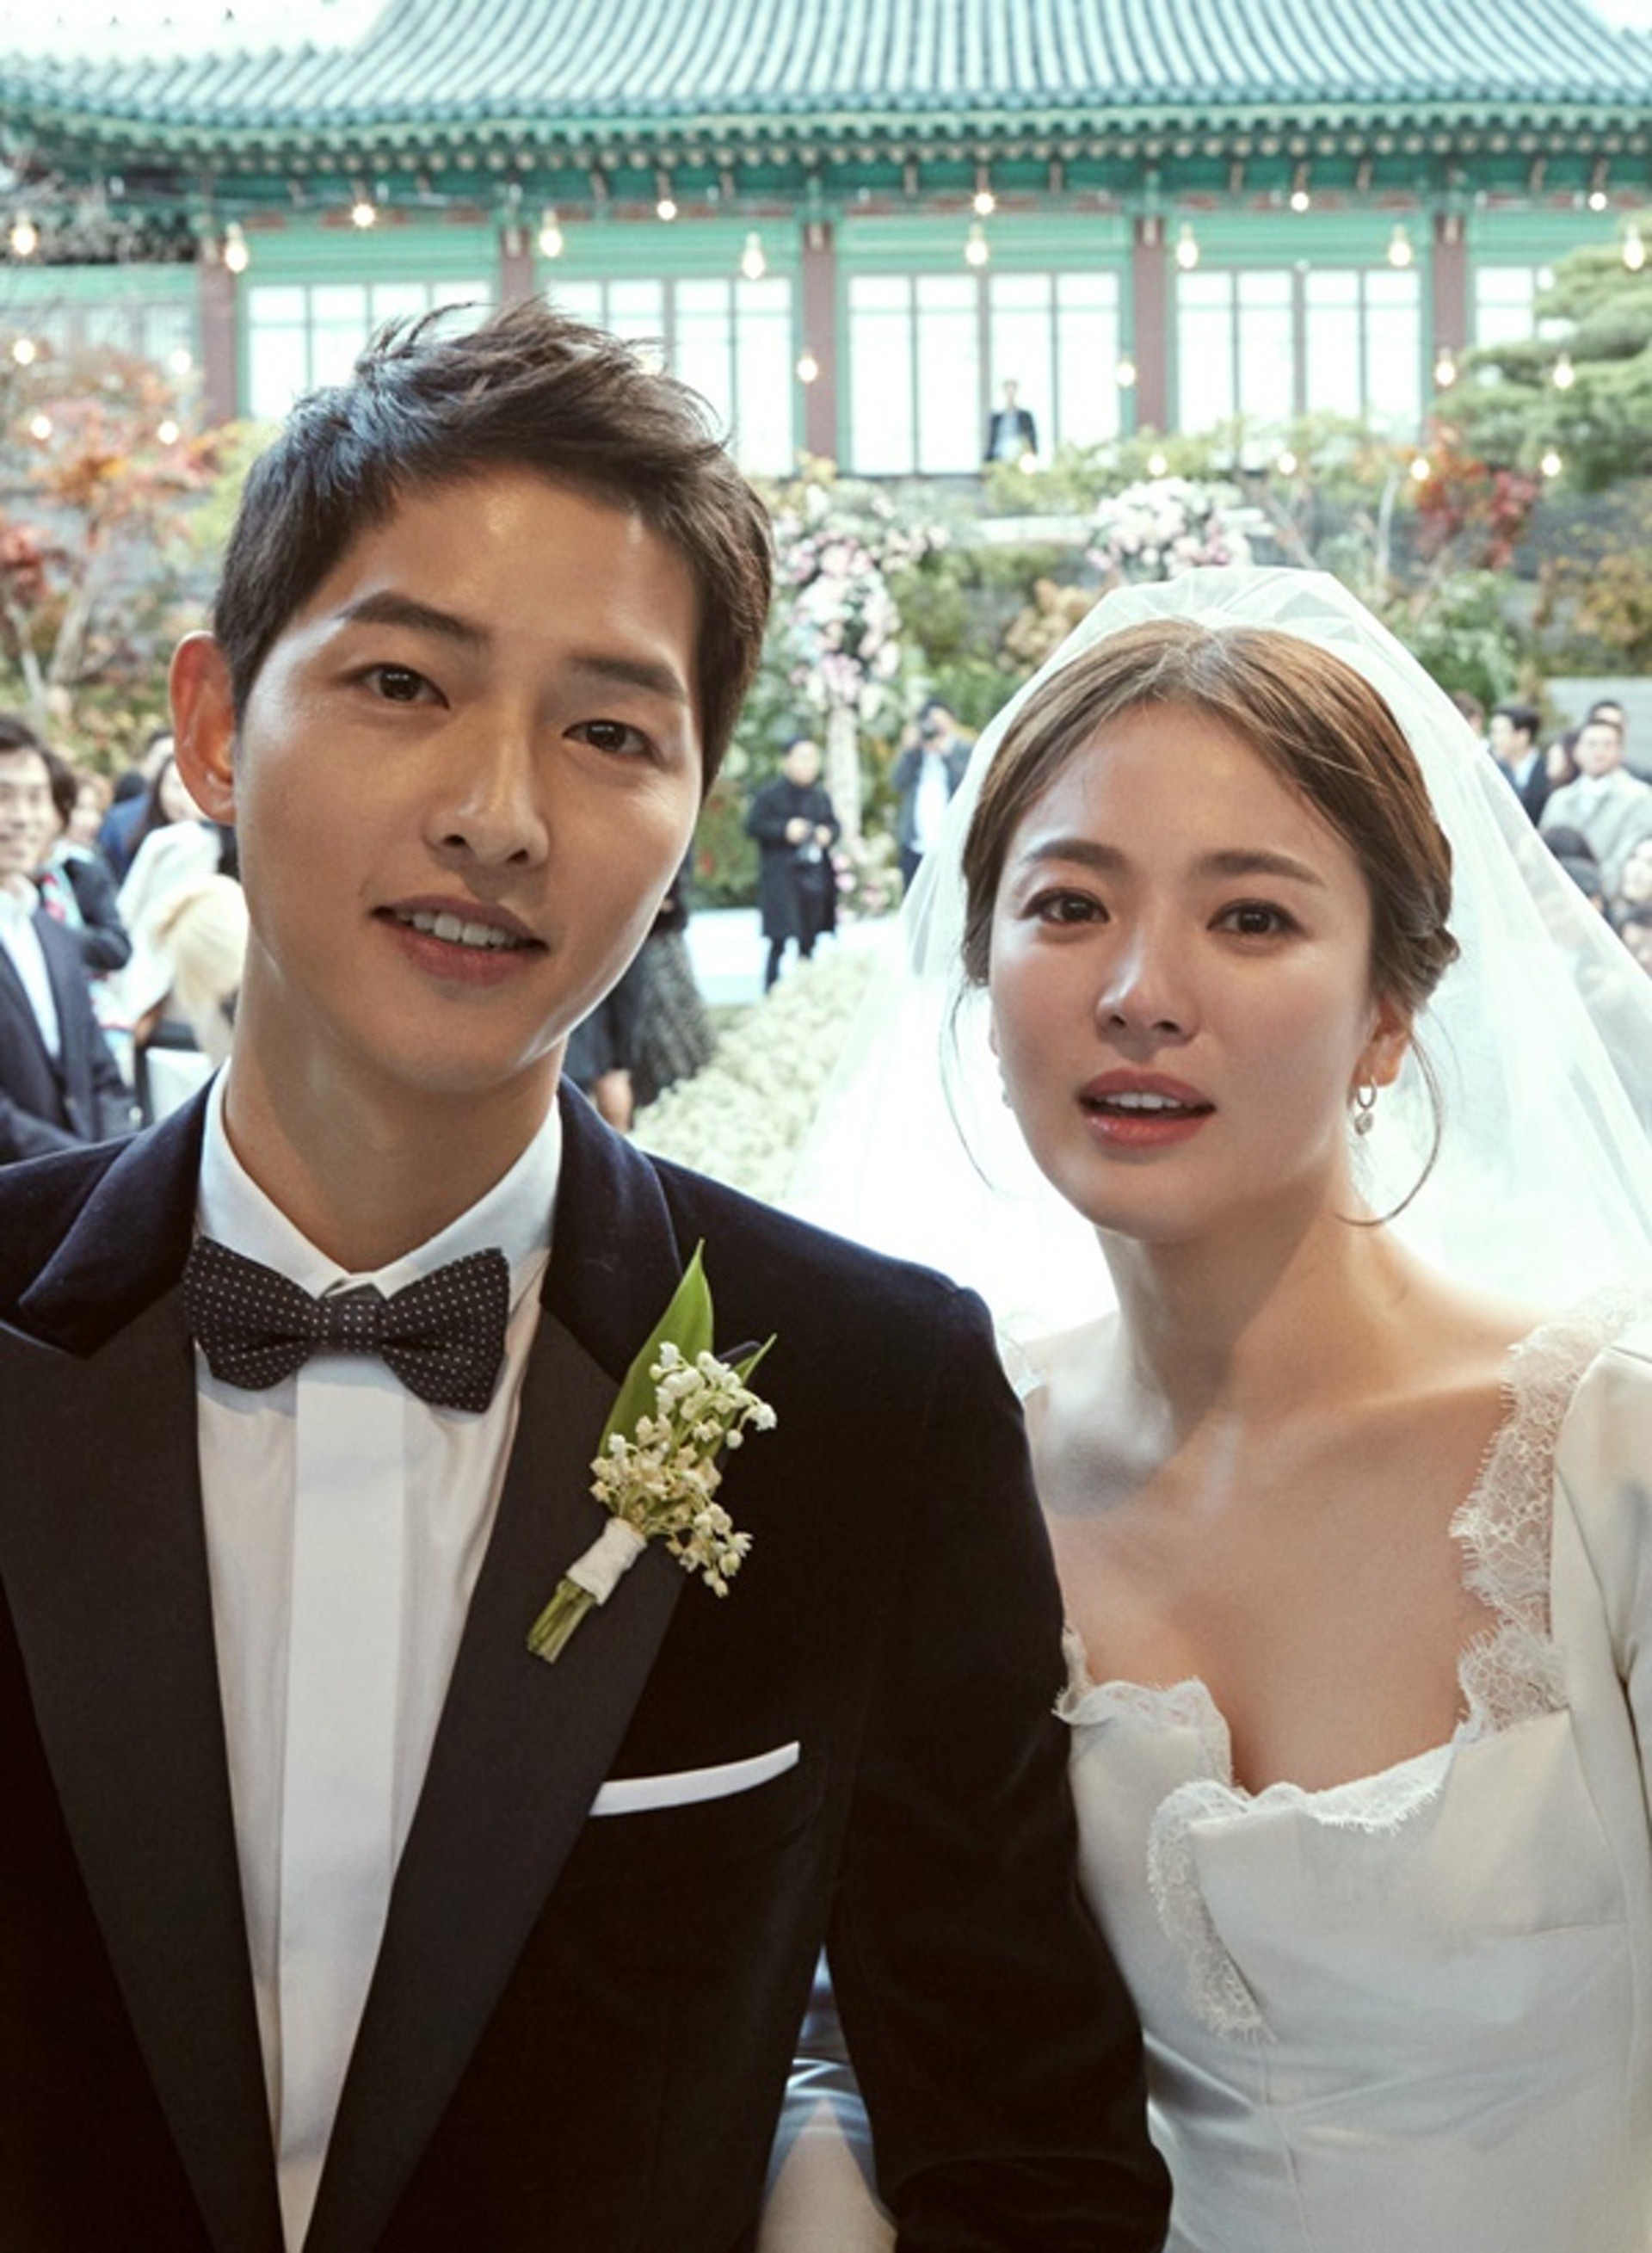 NÓNG: Tòa chính thức tuyên bố Song Joong Ki và Song Hye Kyo không còn là vợ chồng sau 1 năm 8 tháng kết hôn - Ảnh 1.